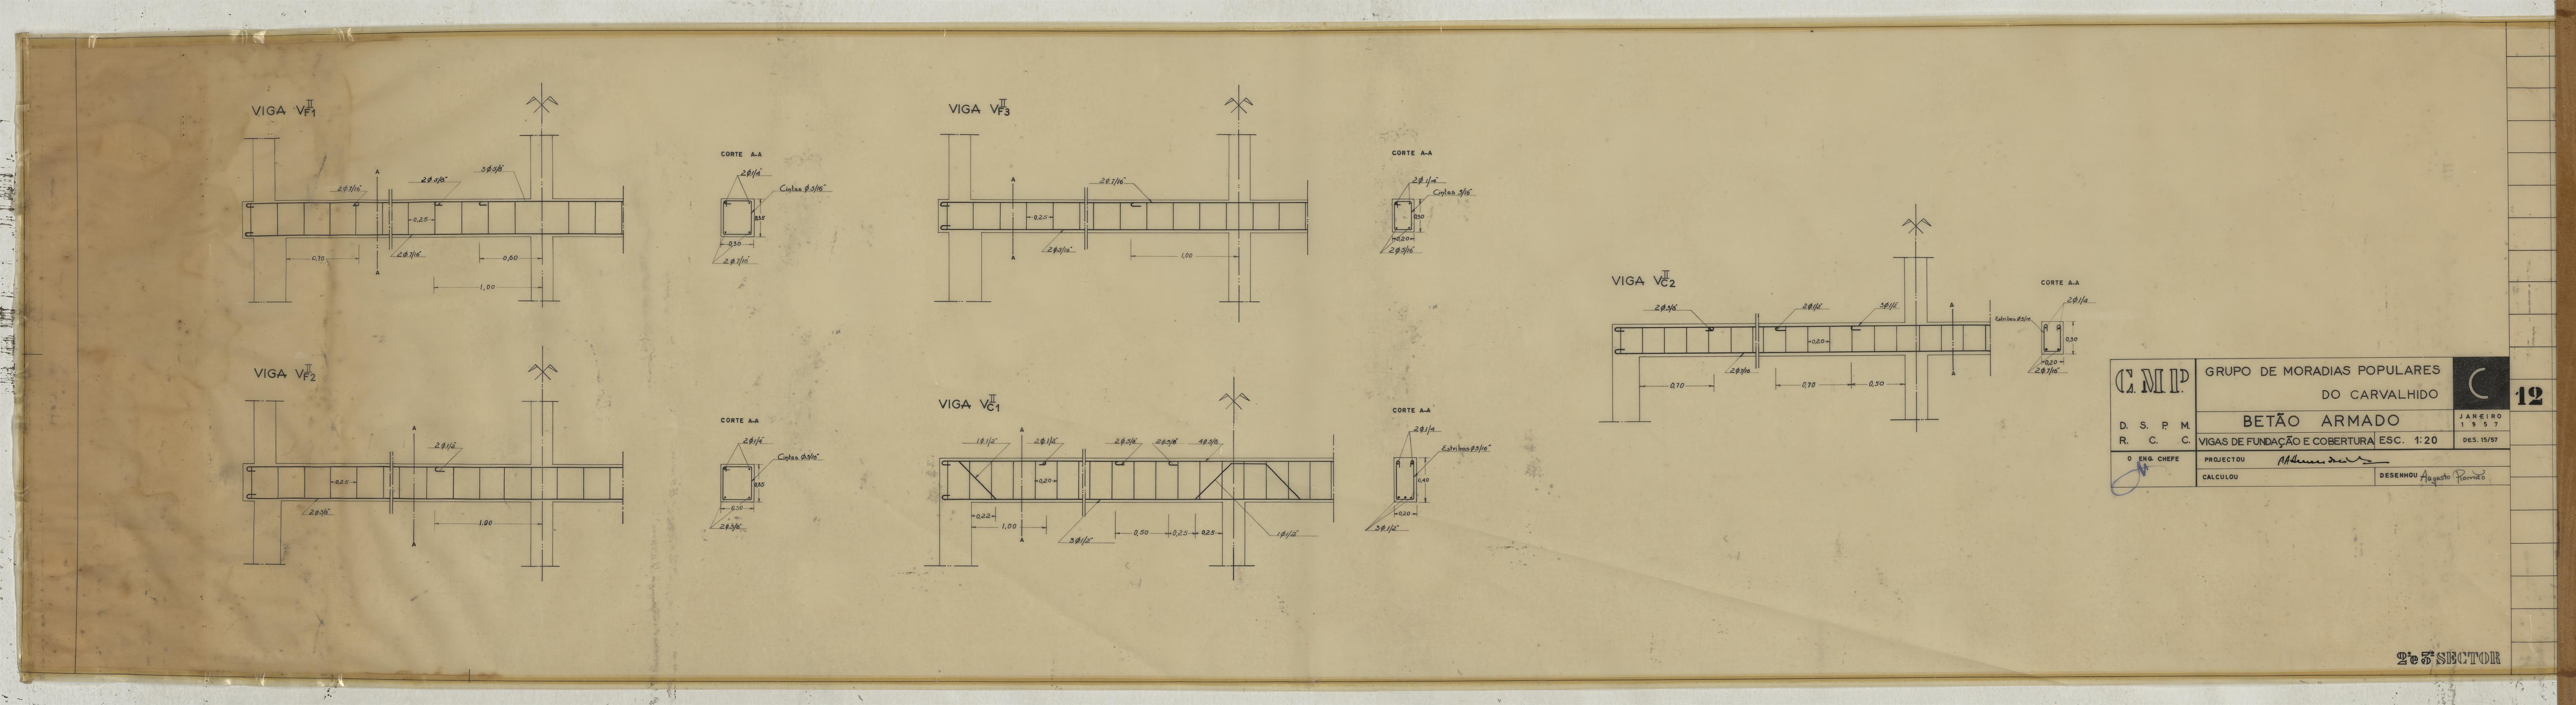 Bairro do Carvalhido : fundações e estrutura : estabilidade : pormenores de vigas, pilares e lajes